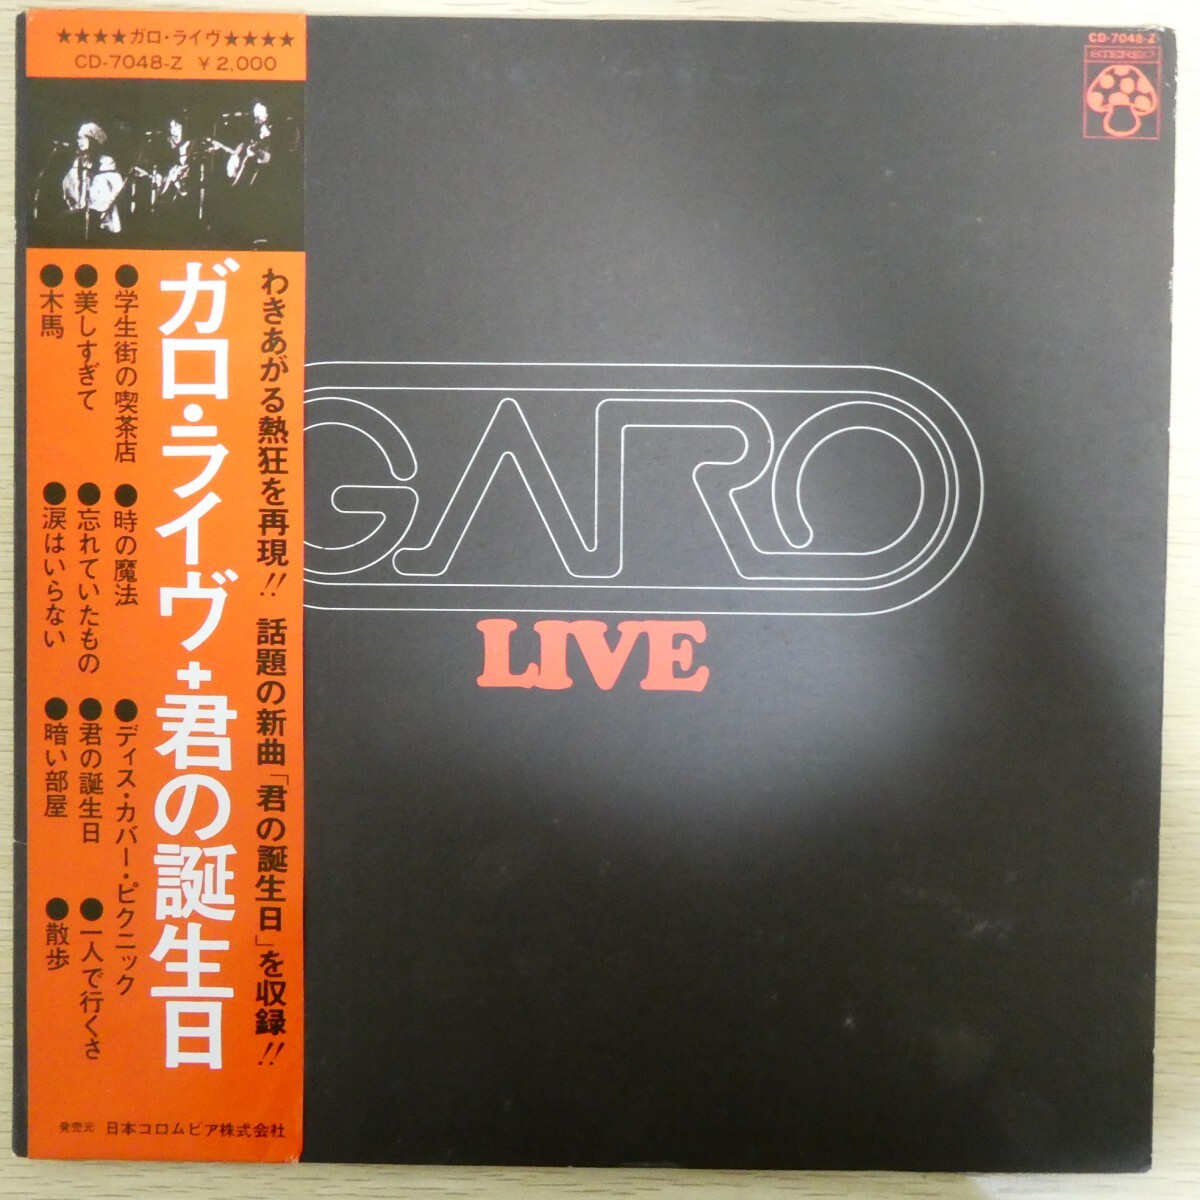 LP5021☆帯付/2枚組「ガロ / ライヴ / 君の誕生日 / CD-7048-Z」_画像1